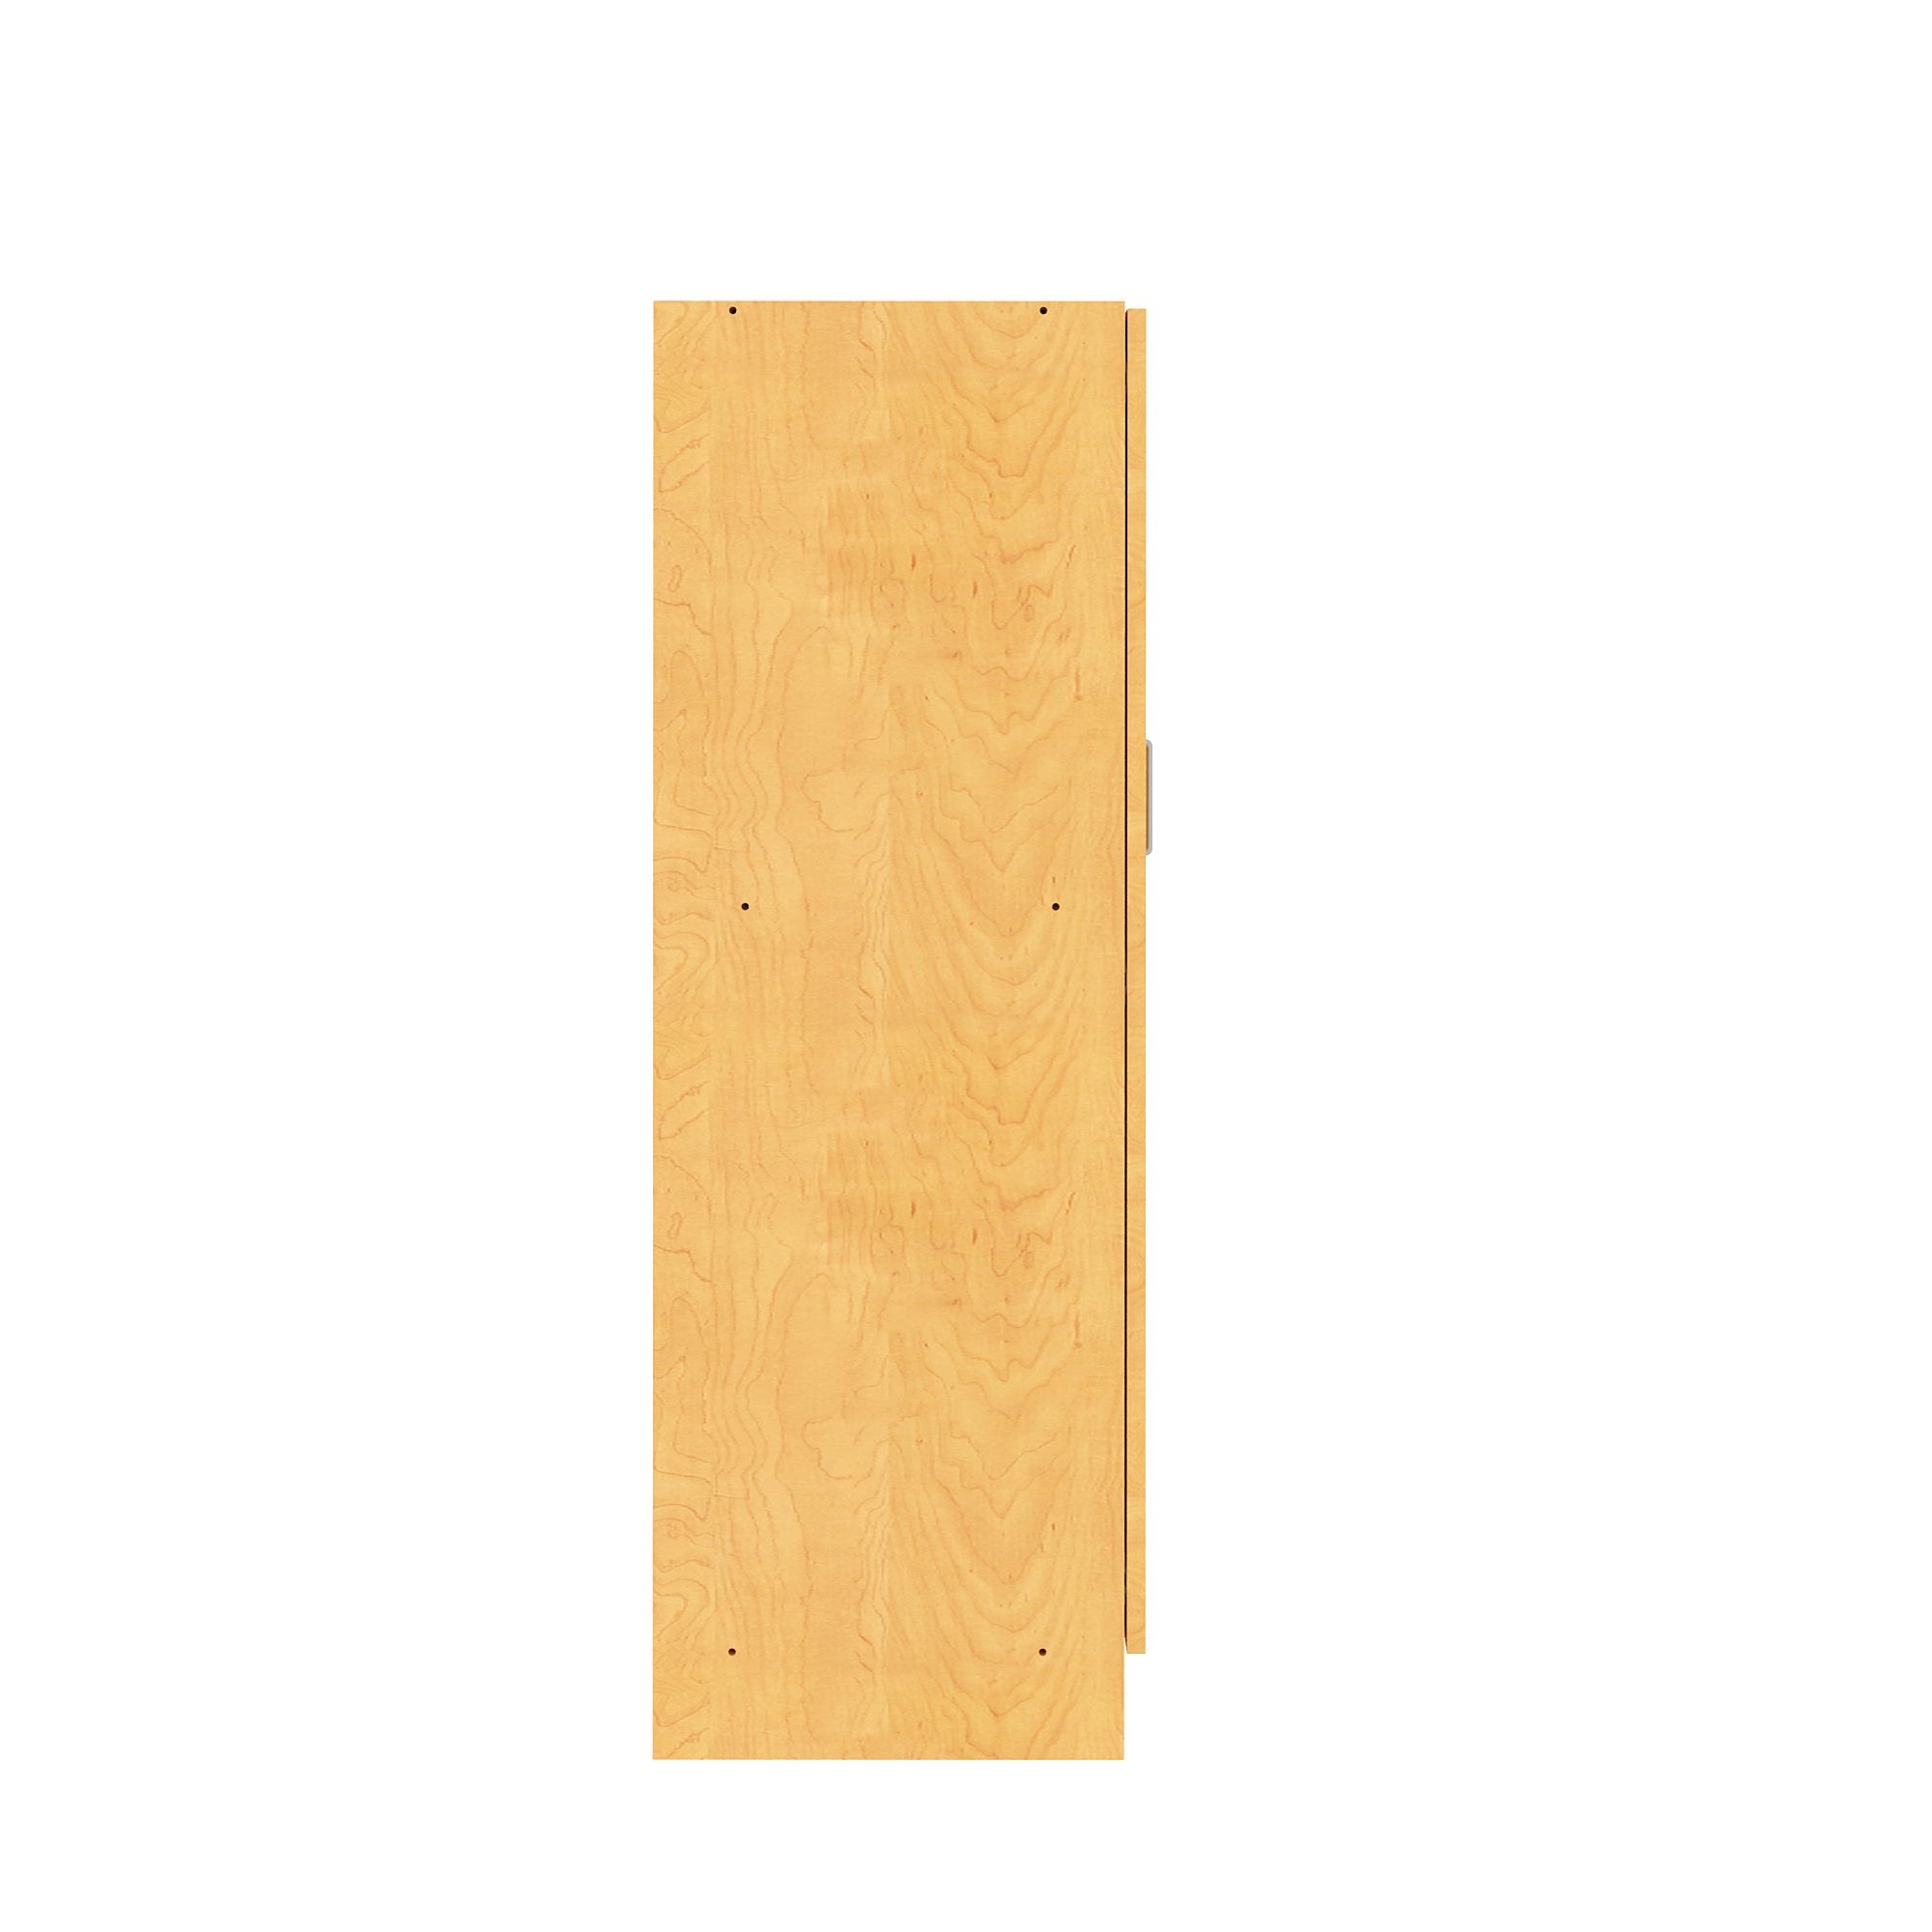 Single-Door Tall Cabinet 19-1/2" Wide